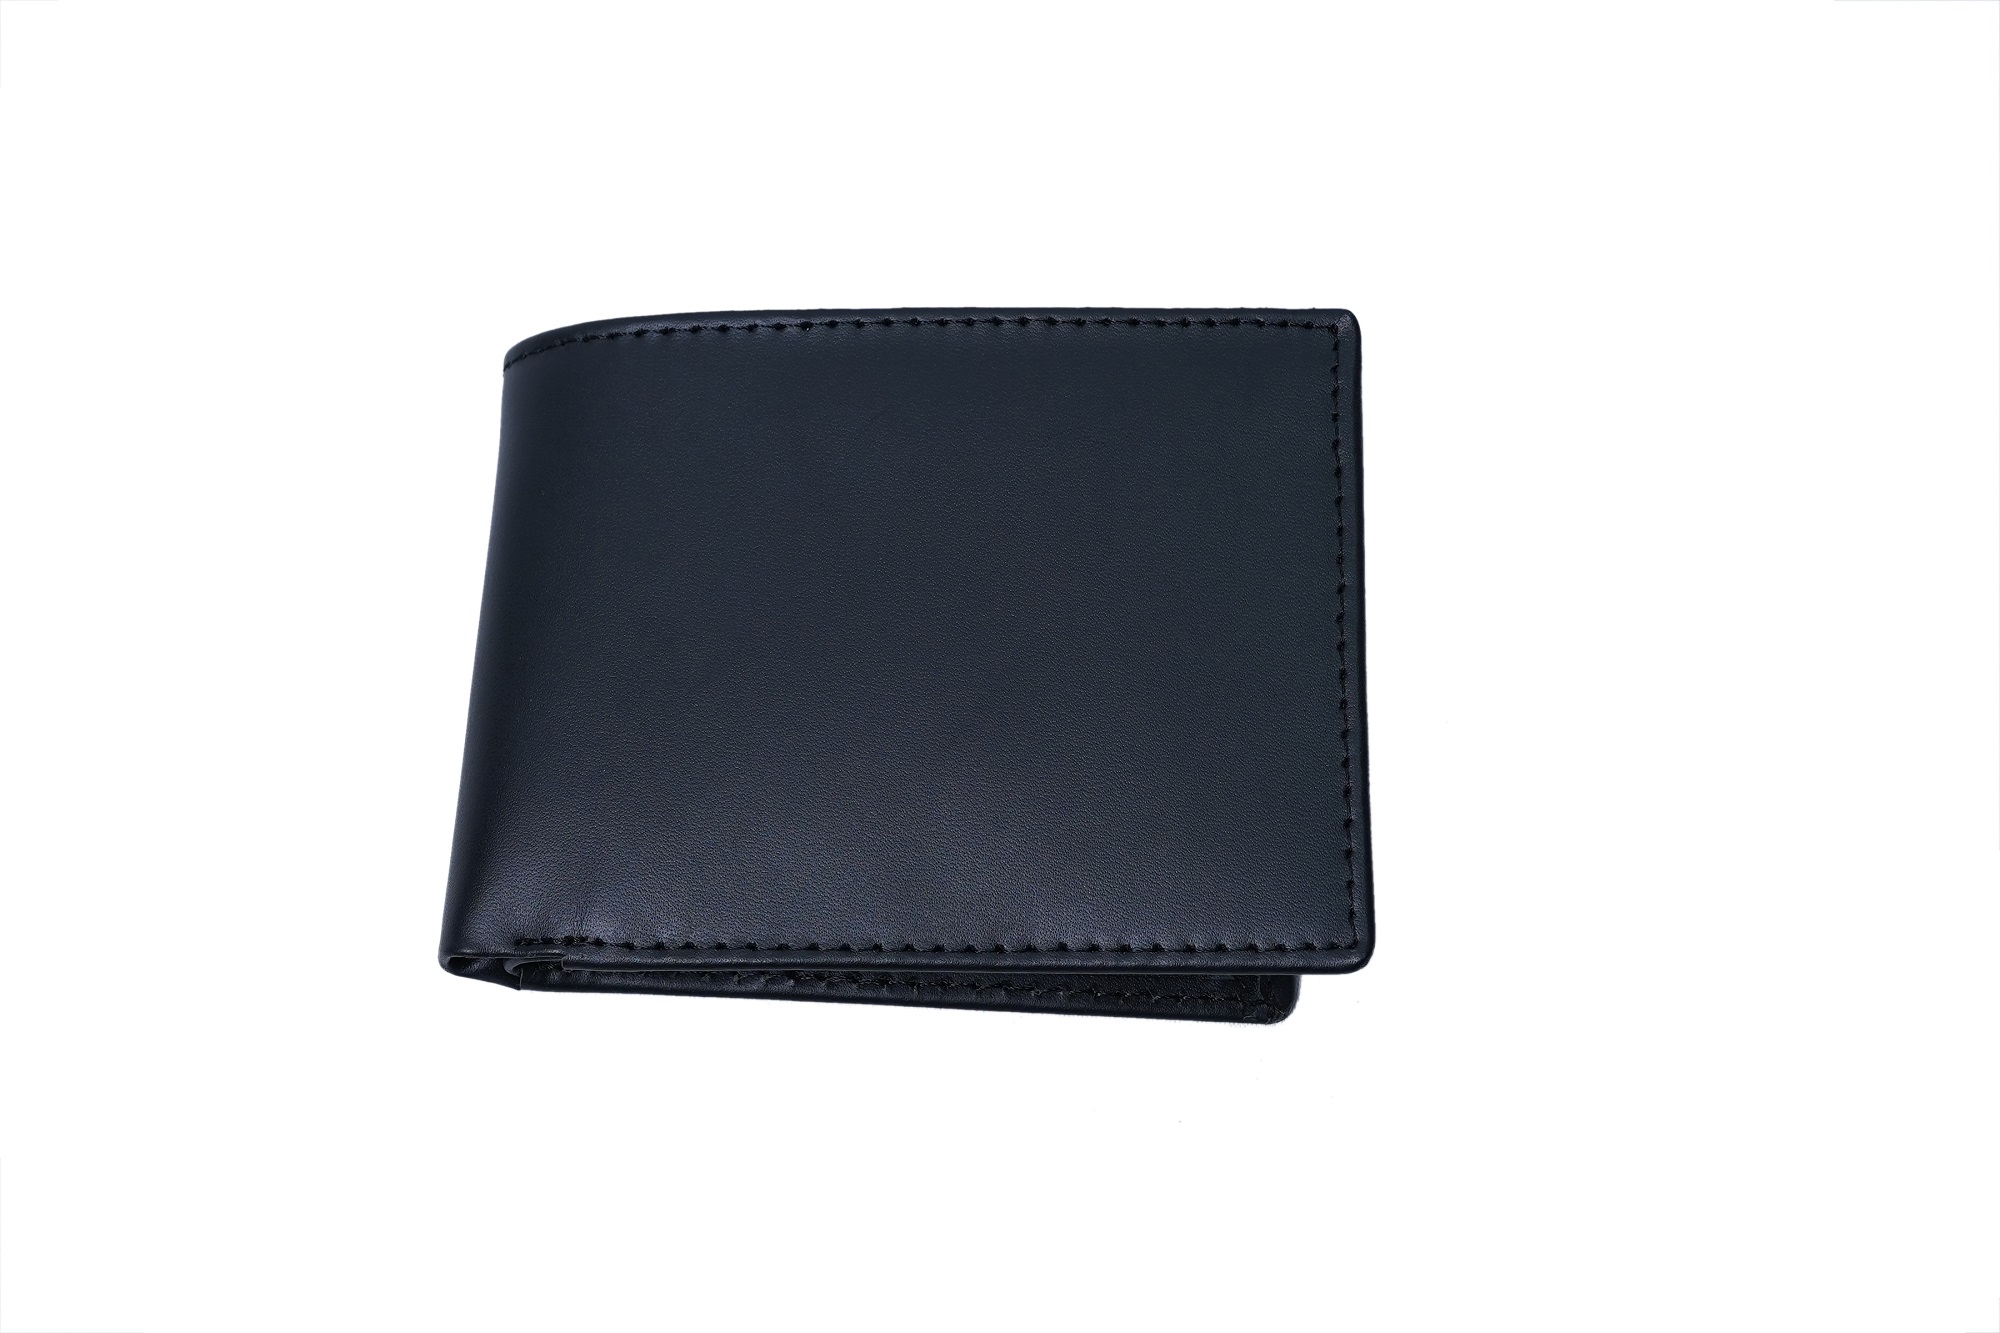 plain black leather wallet